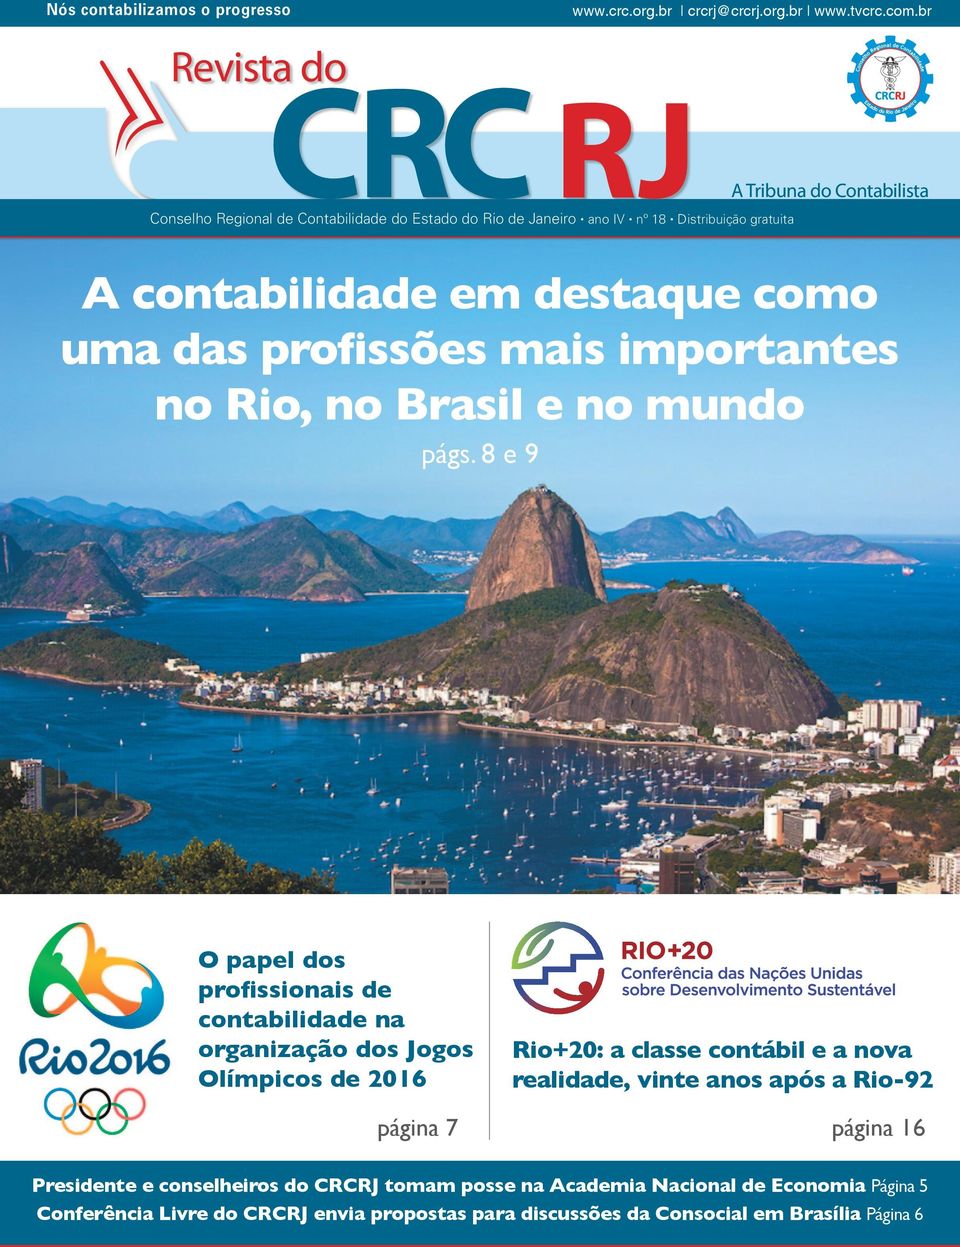 8 e 9 A Tribuna do Contabilista A contabilidade em destaque como uma das profissões mais importantes no Rio, no Brasil e no mundo O papel dos profissionais de